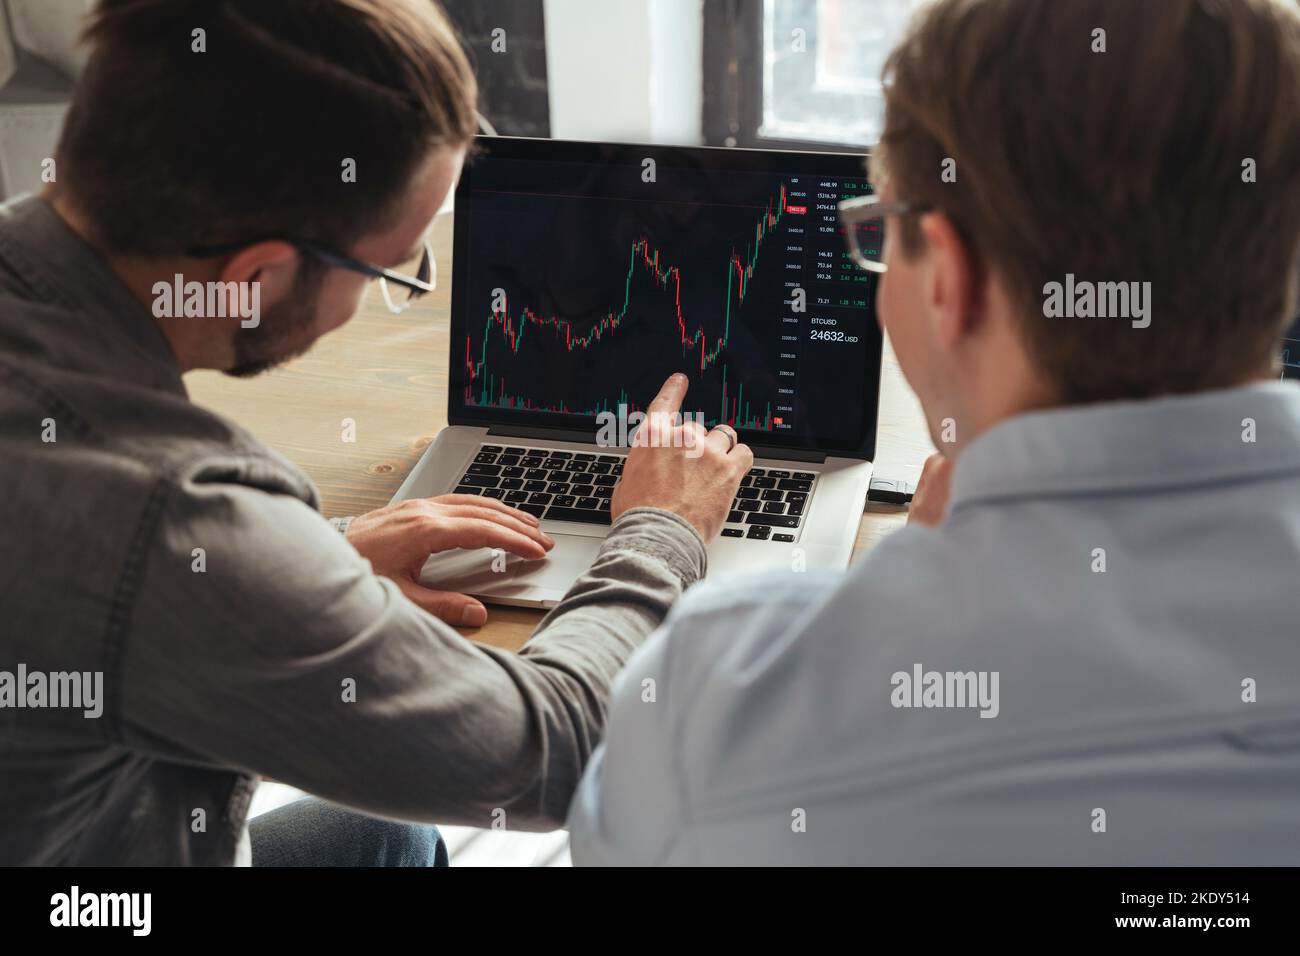 Vue d'ensemble de la table de Trader enseignant les bases de l'investissement en crypto-monnaie à ses collègues, expliquant les tendances du marché ou consultant son client, en analysant les tableaux de flux d'argent ensemble sur l'écran de pc Banque D'Images